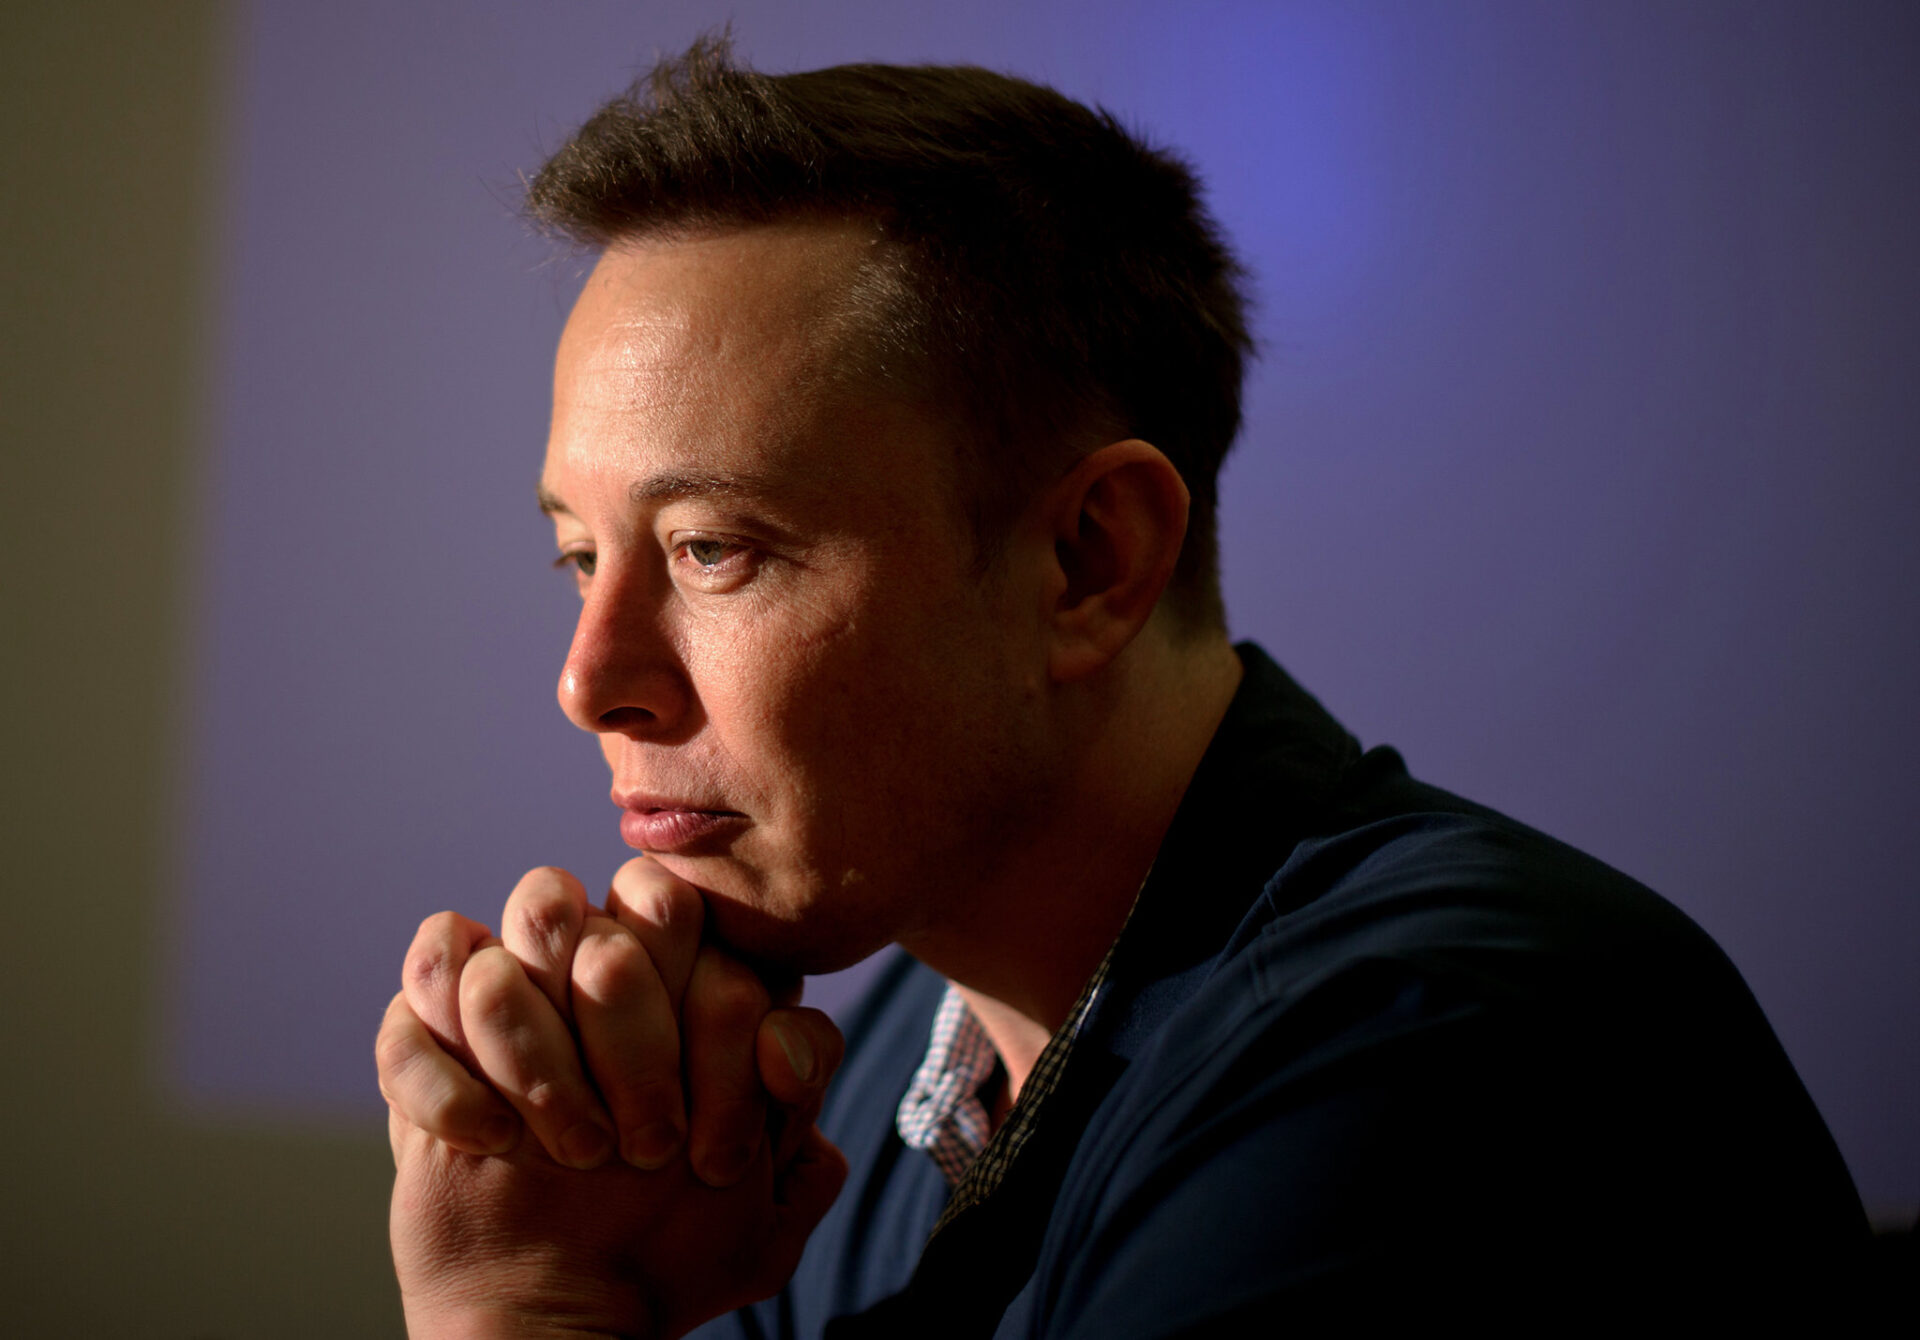 Imagem mostra o bilionário Elon Musk, atual CEO do Twitter, sentado com o queixo pousado sobre as mãos, com um rosto contemplativo